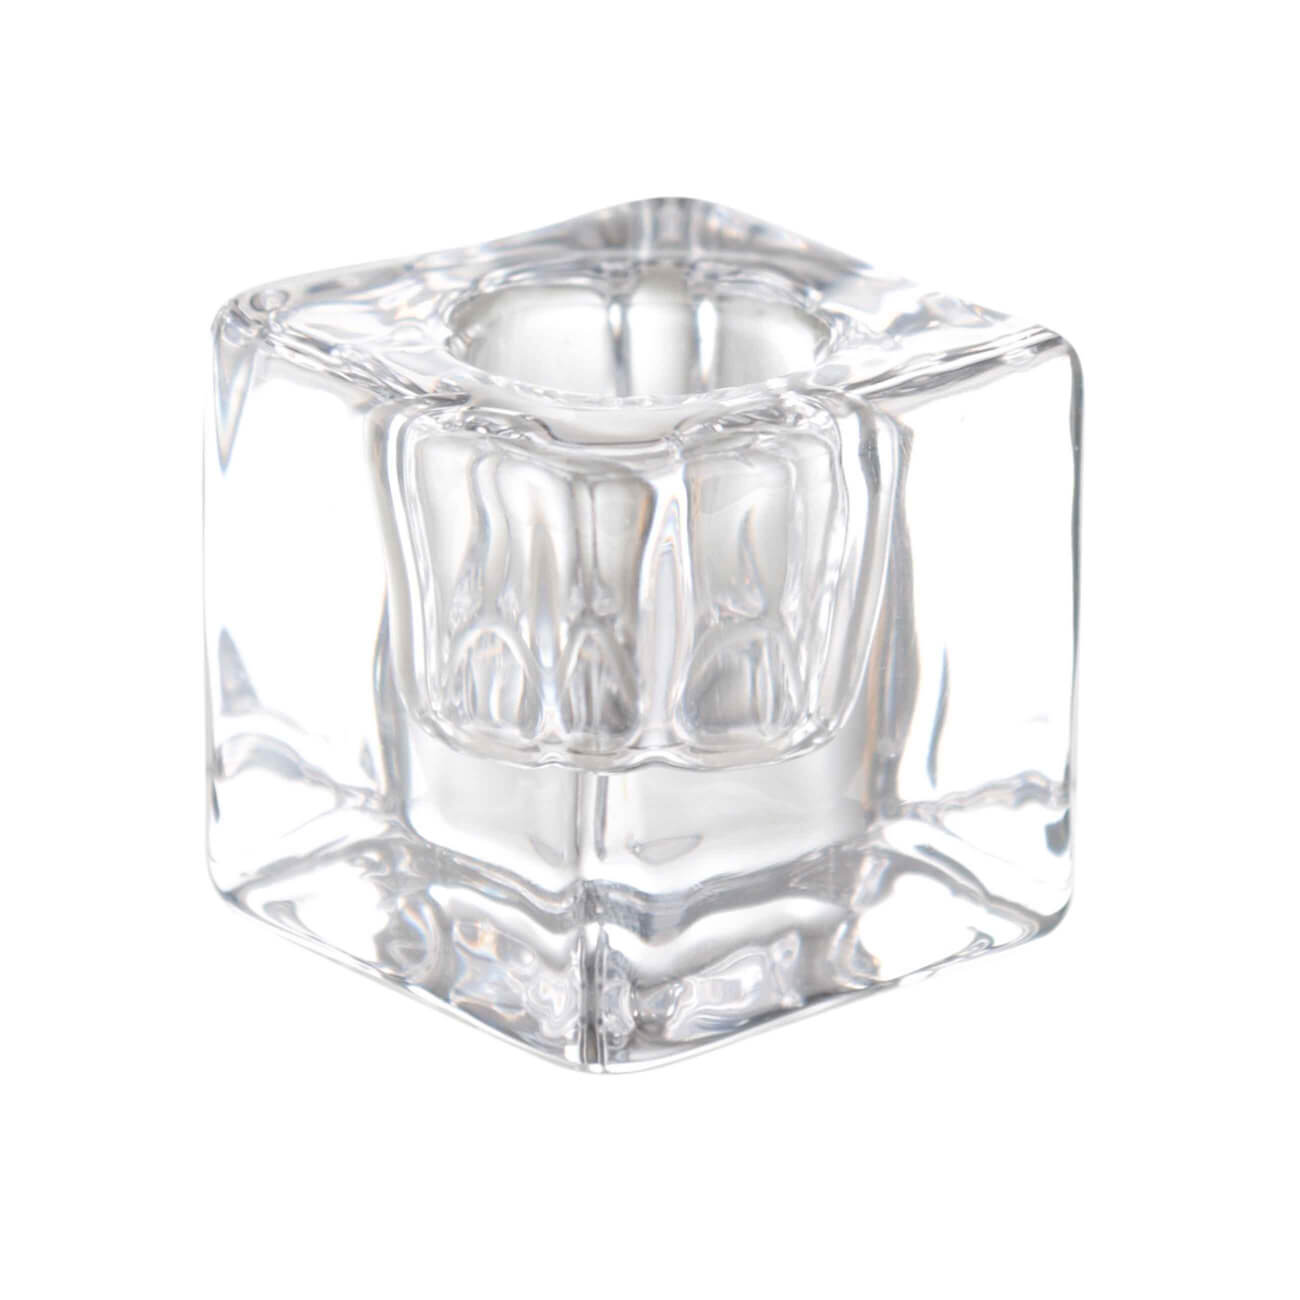 Подсвечник, 4 см, для тонкой свечи, стекло, Cube подсвечник металл стекло на 3 свечи сплетённые кольца золото 18х6х10 см